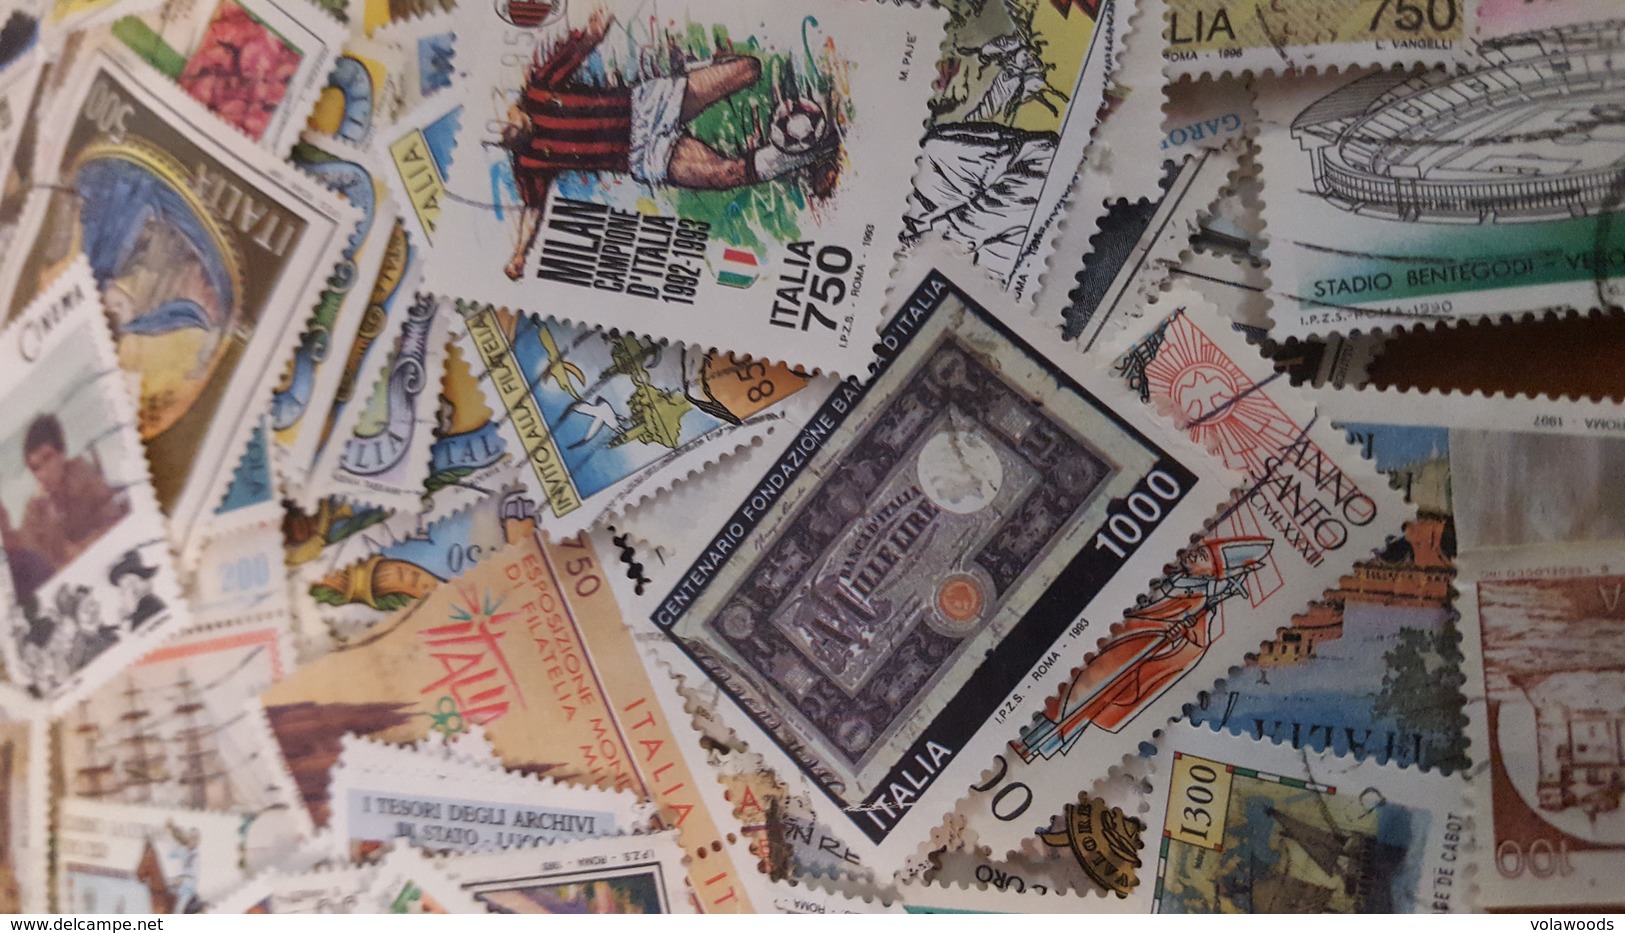 Italia - enorme lotto di francobolli repubblica usati SOLO COMMEMORATIVI pre euro!!! Migliaia e migliaia di pezzi * A.R.